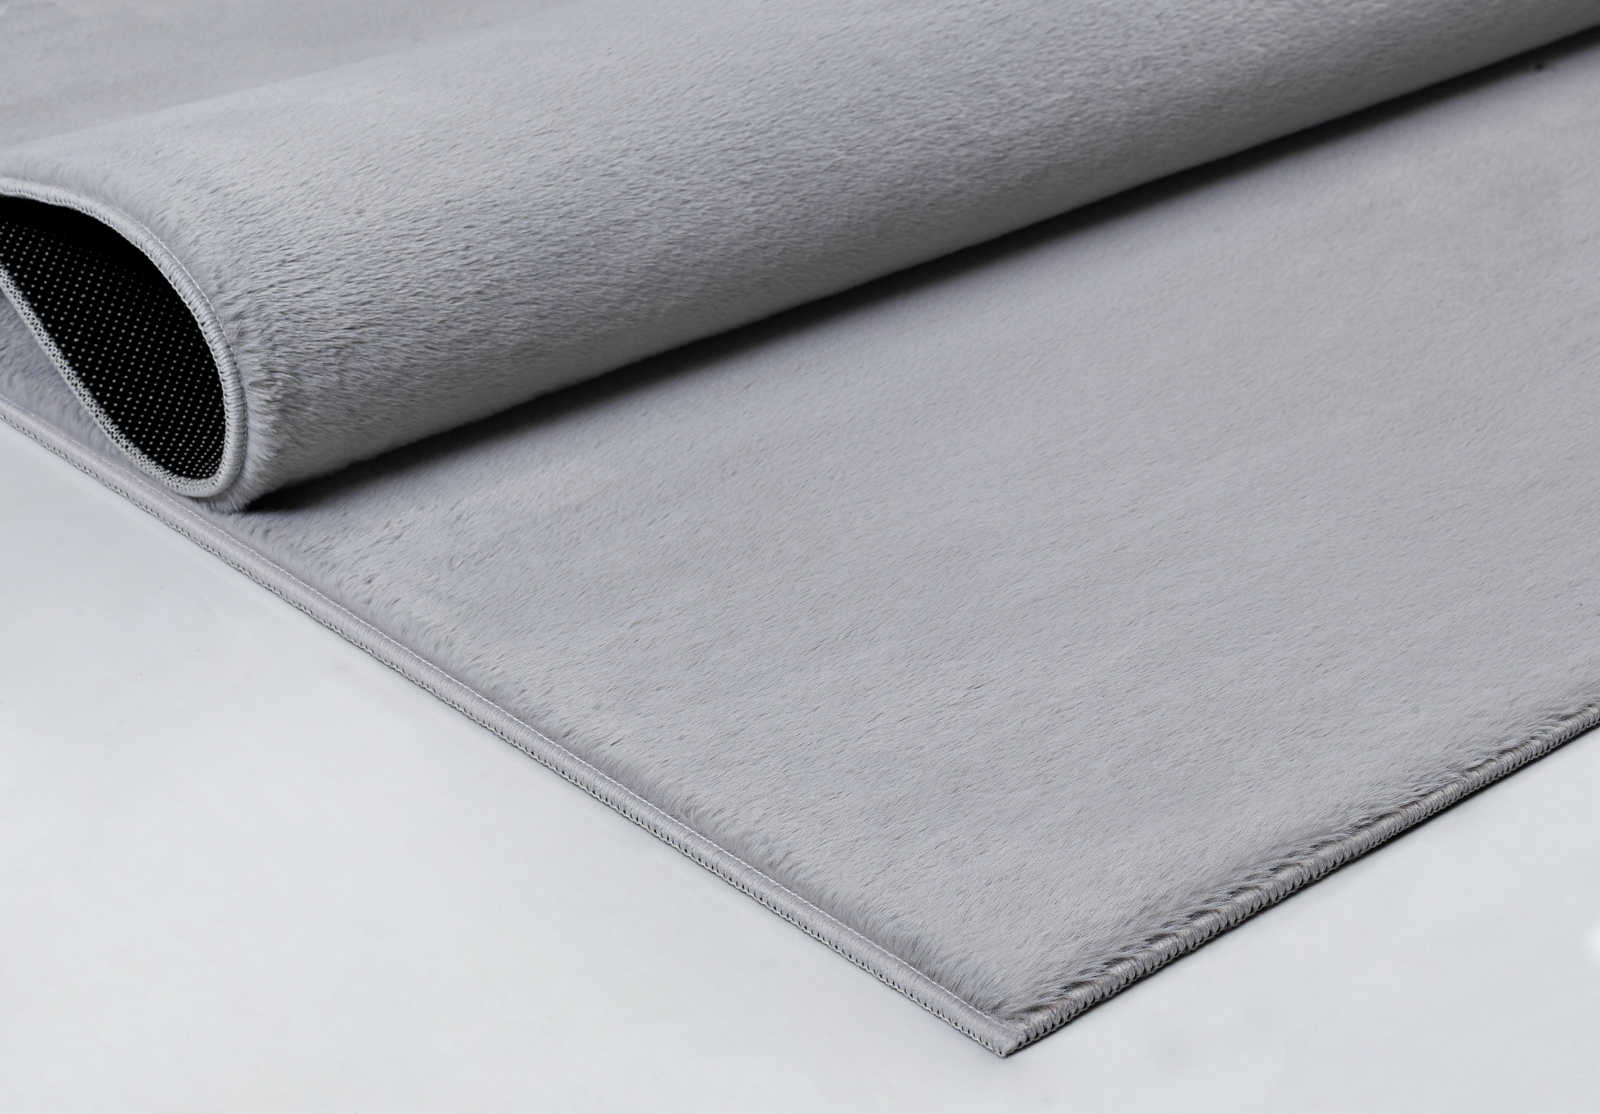             Angenehmer Hochflor Teppich in sanften Grau – 100 x 50 cm
        